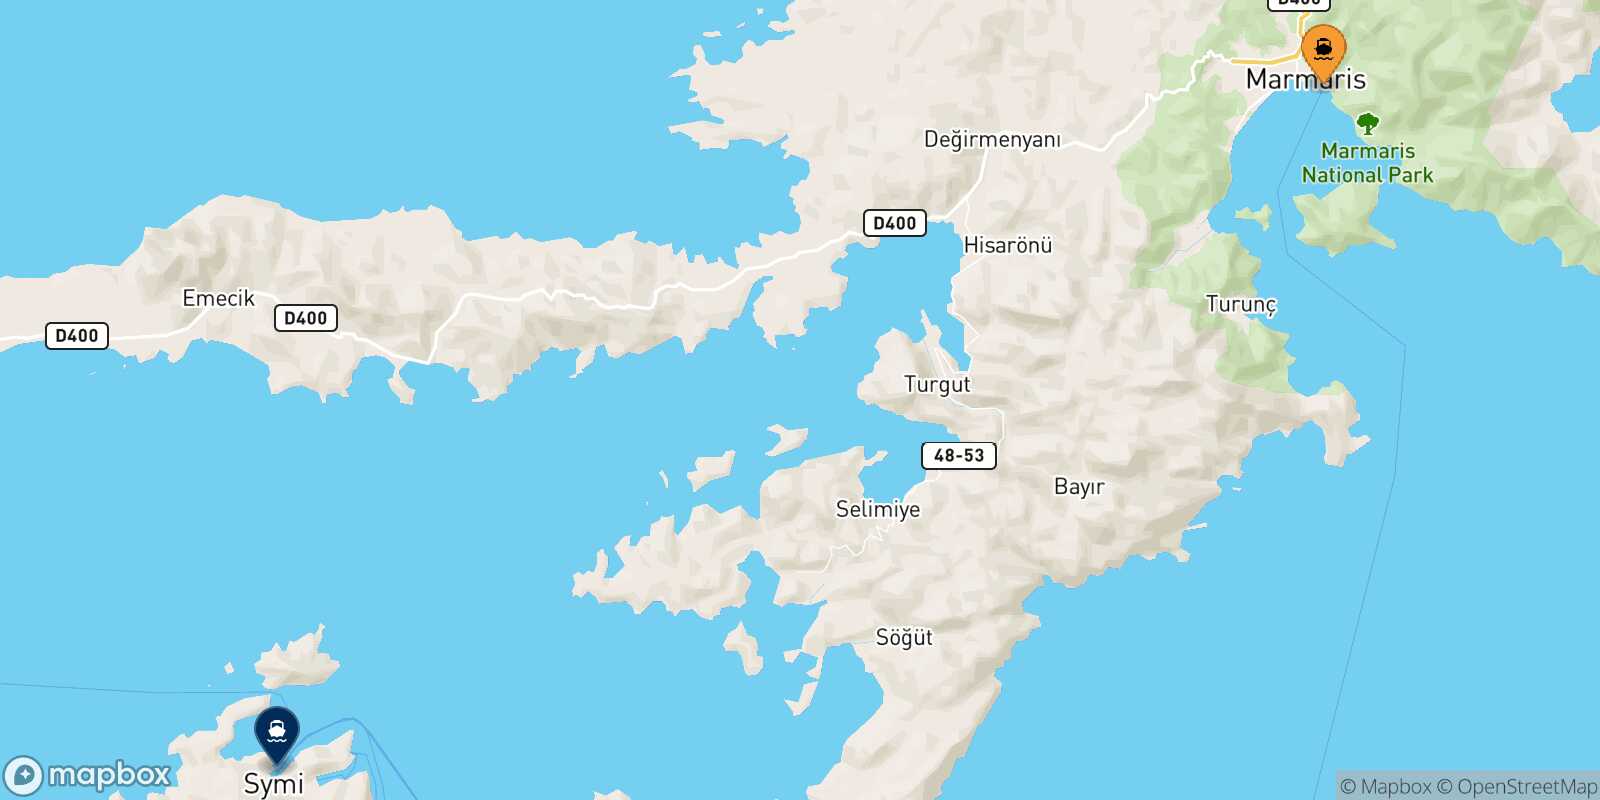 Marmaris Symi route map